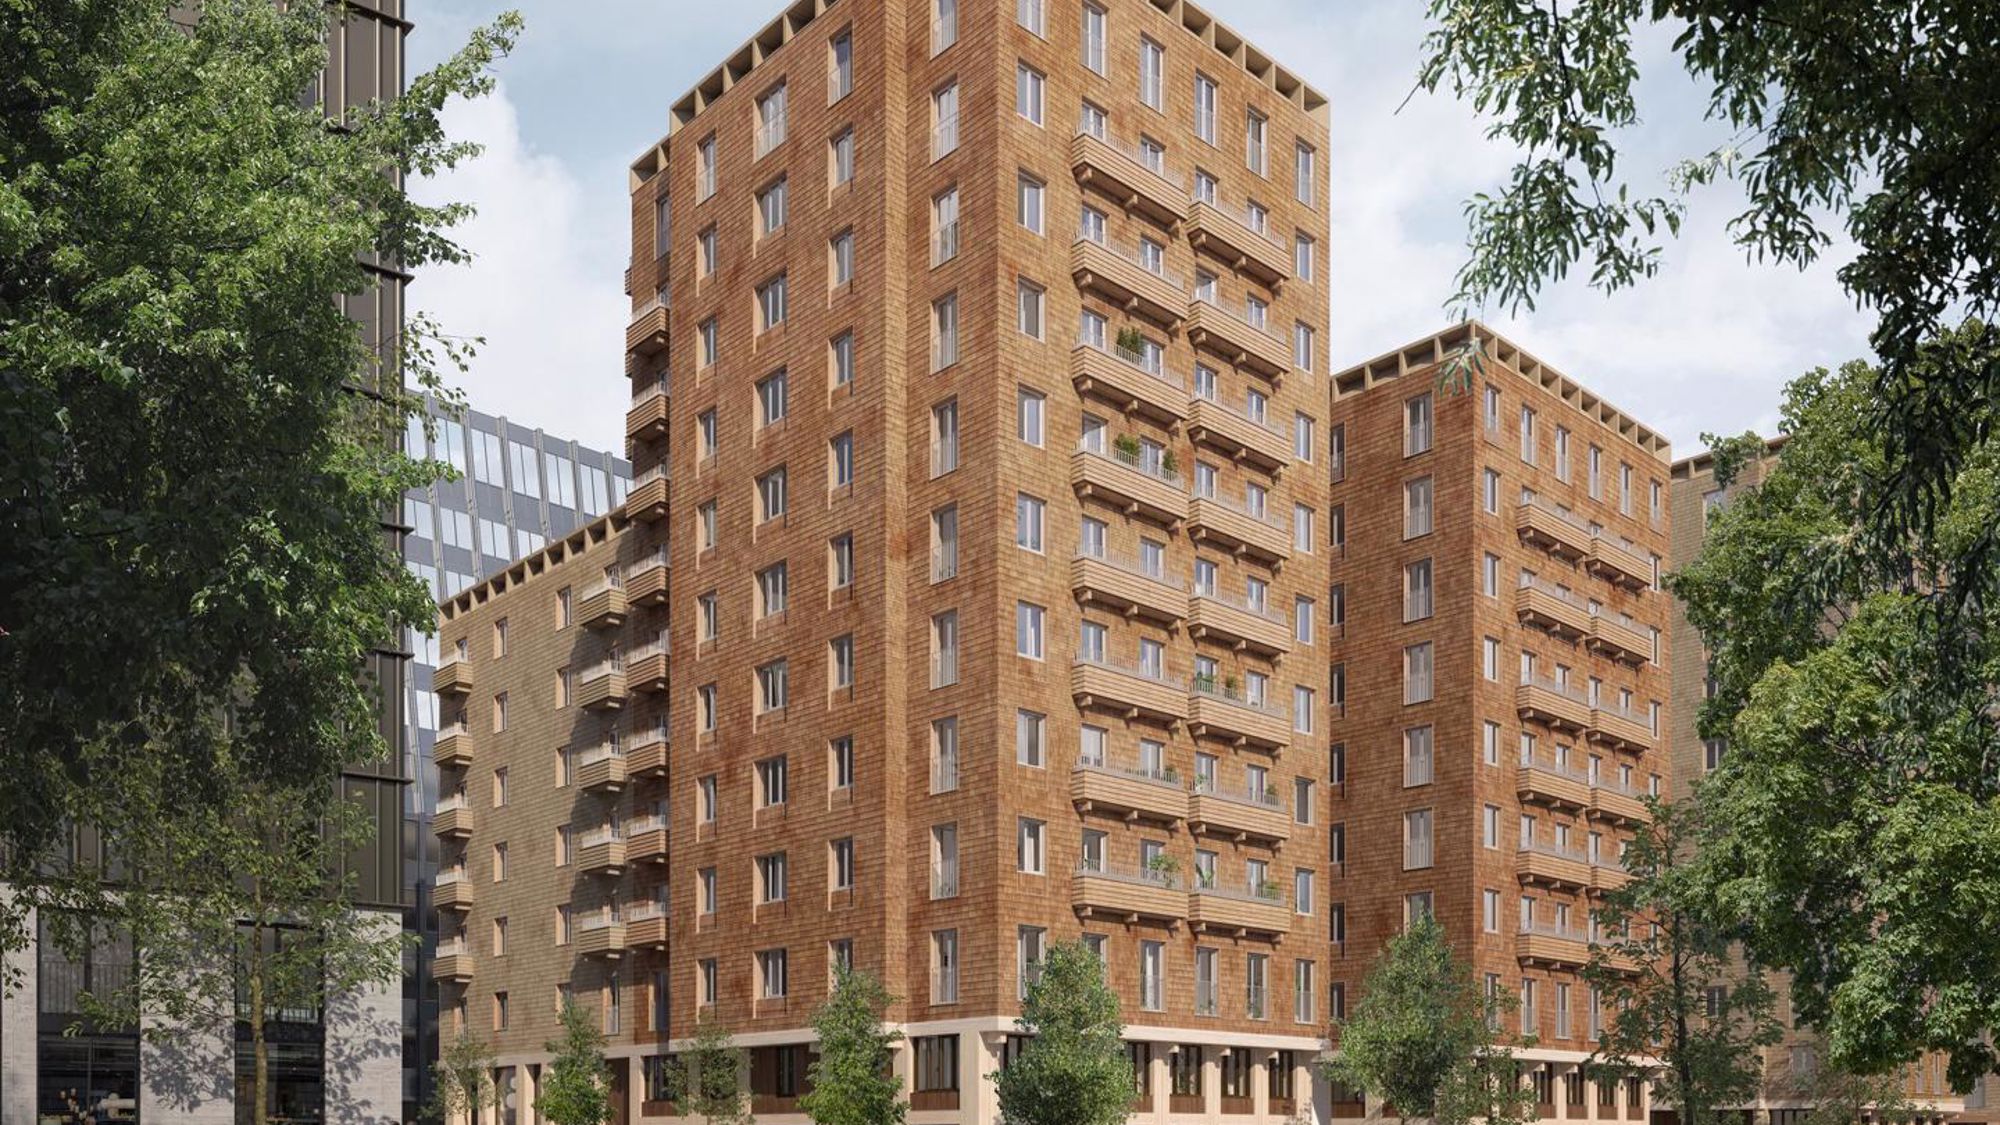 Säljstart för Cederhusen - Stockholms första bostadskvarter i massivträ 